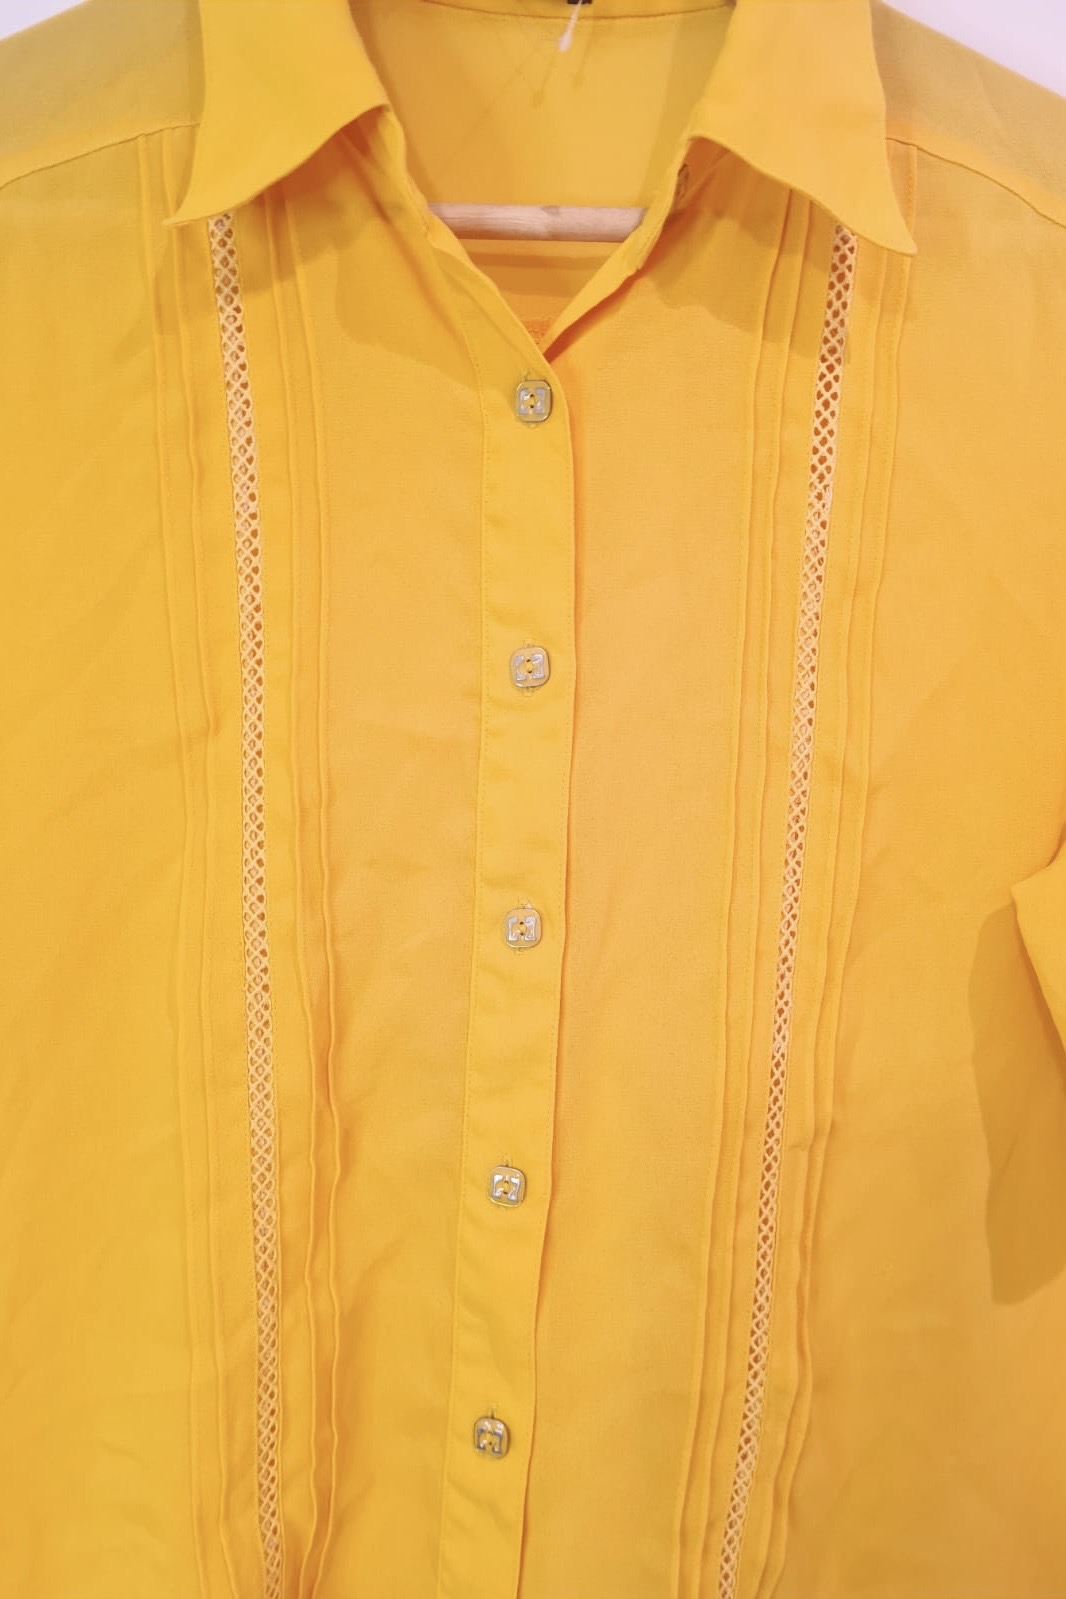 חולצת וינטג' שקפקפה בצהוב